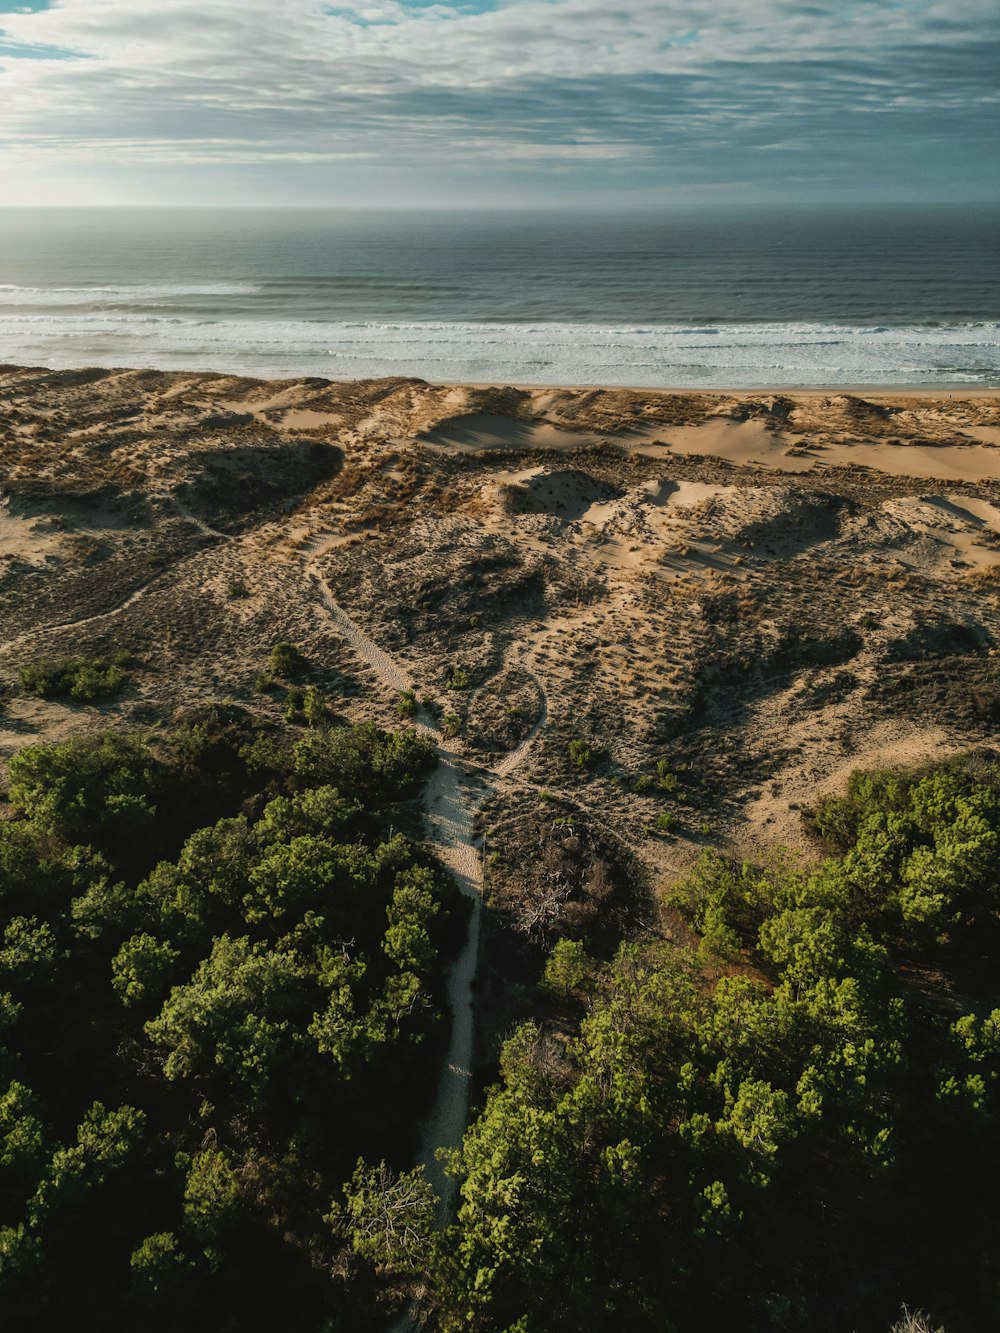 una vista aérea de una playa con árboles y un cuerpo de agua